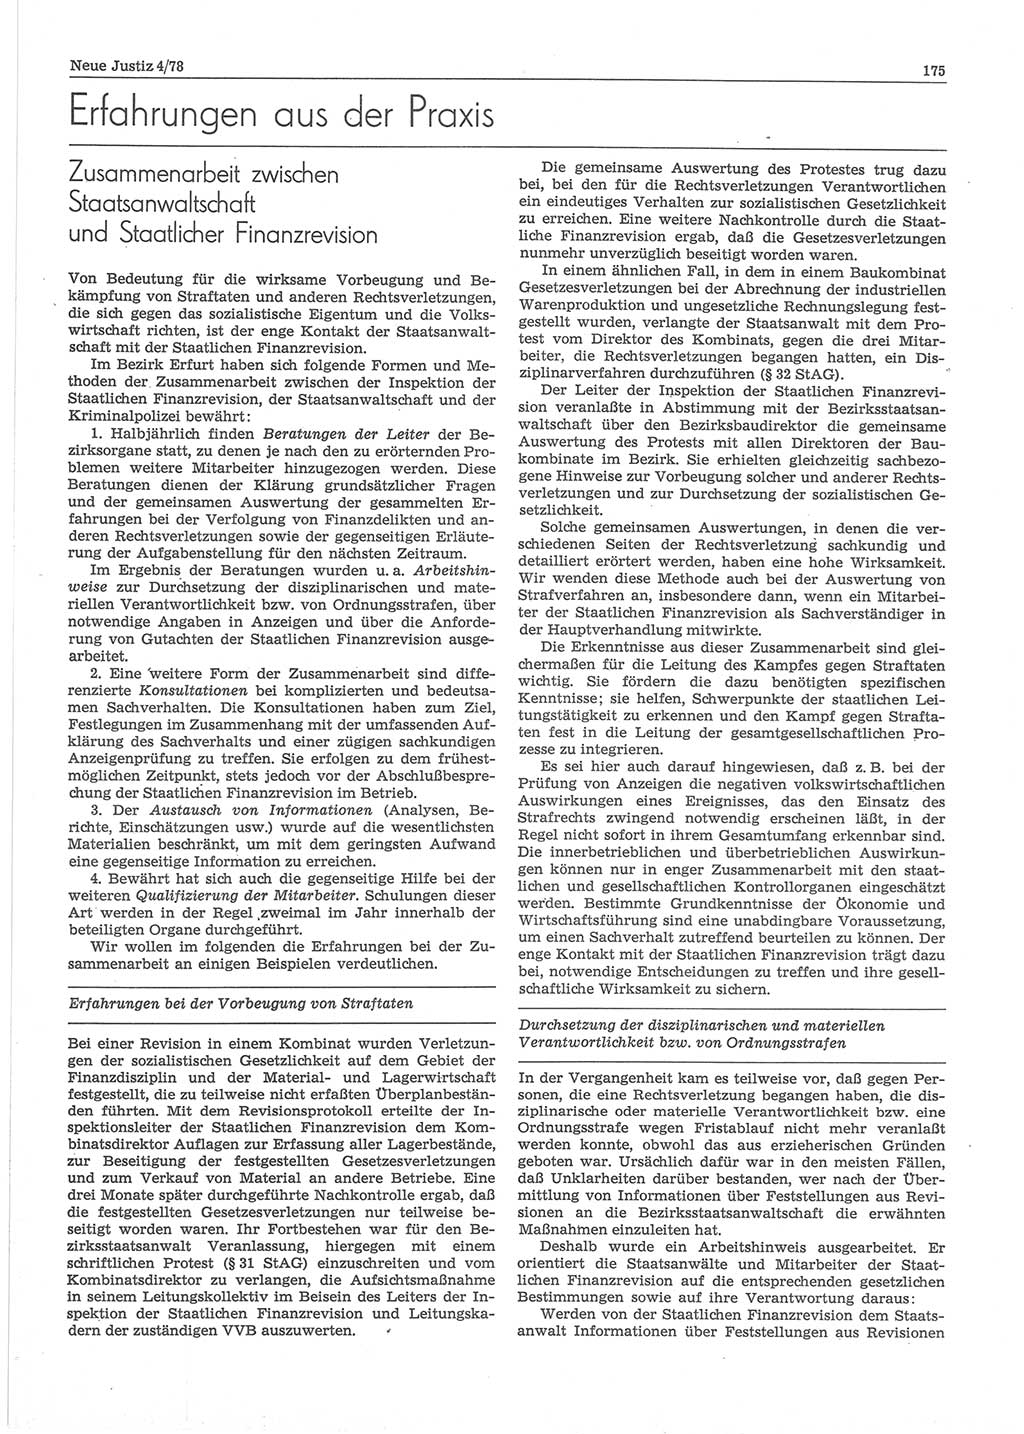 Neue Justiz (NJ), Zeitschrift für sozialistisches Recht und Gesetzlichkeit [Deutsche Demokratische Republik (DDR)], 32. Jahrgang 1978, Seite 175 (NJ DDR 1978, S. 175)